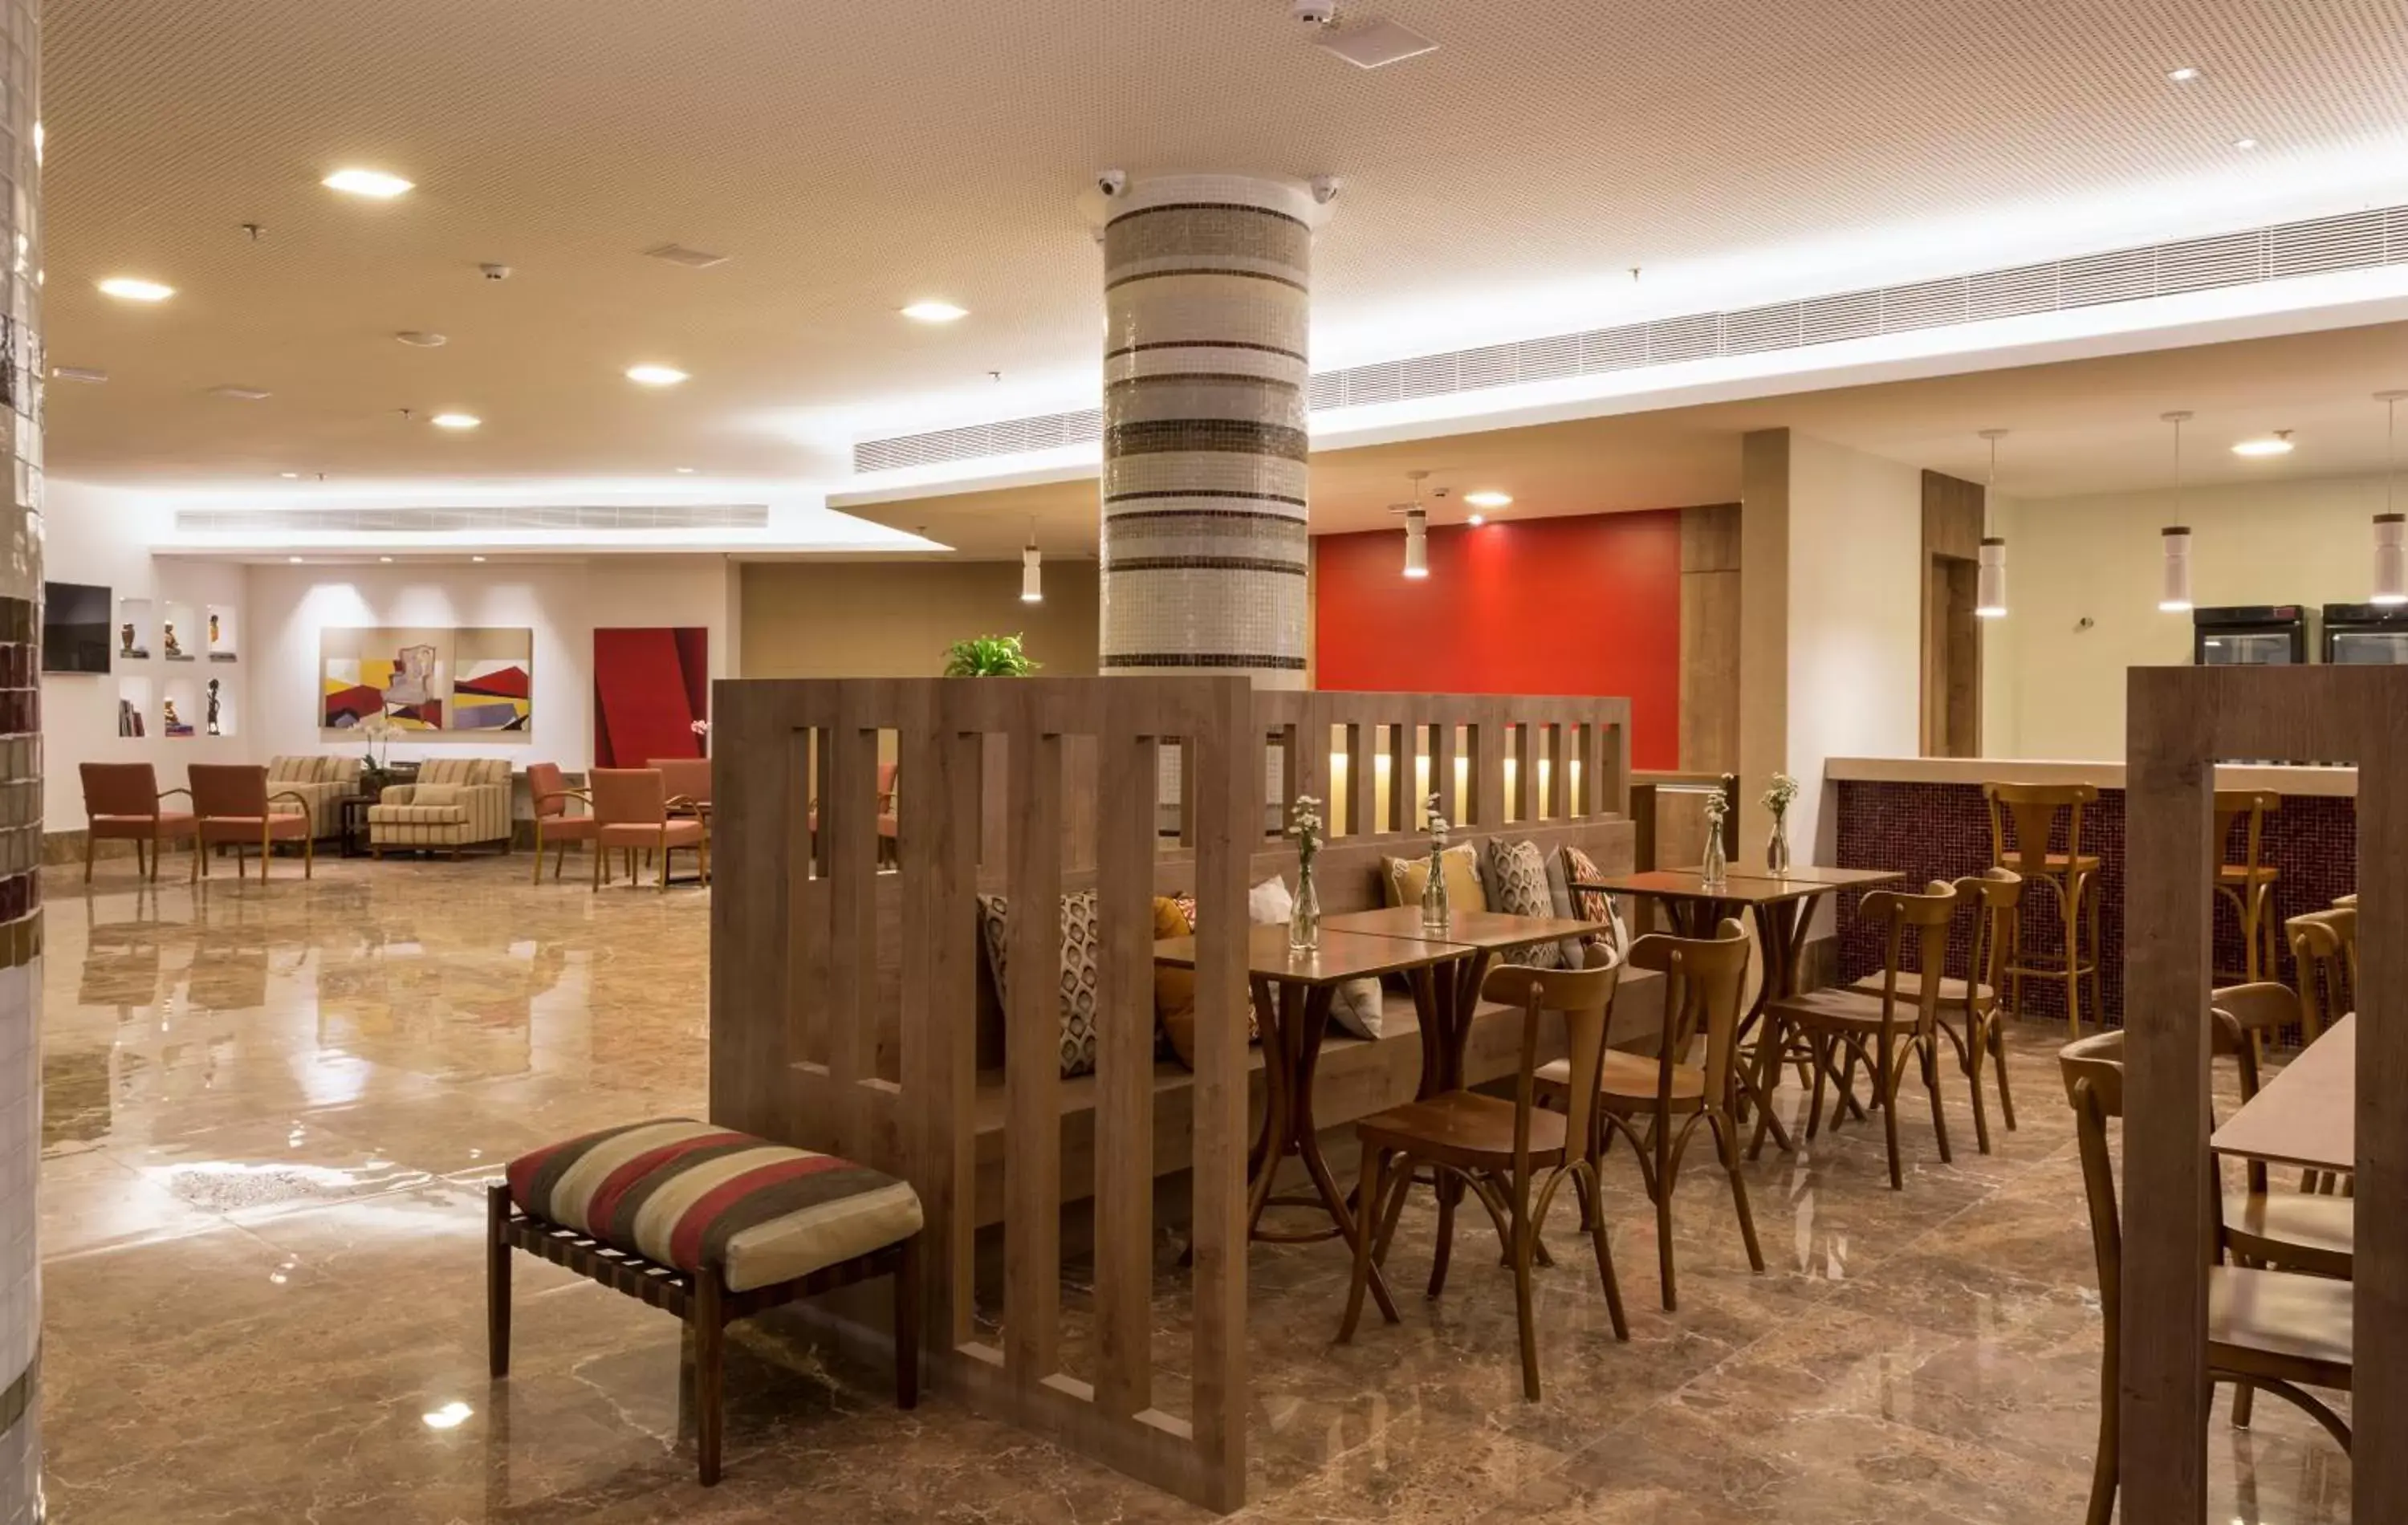 Lobby or reception, Restaurant/Places to Eat in Sleep Inn Praia do Canto